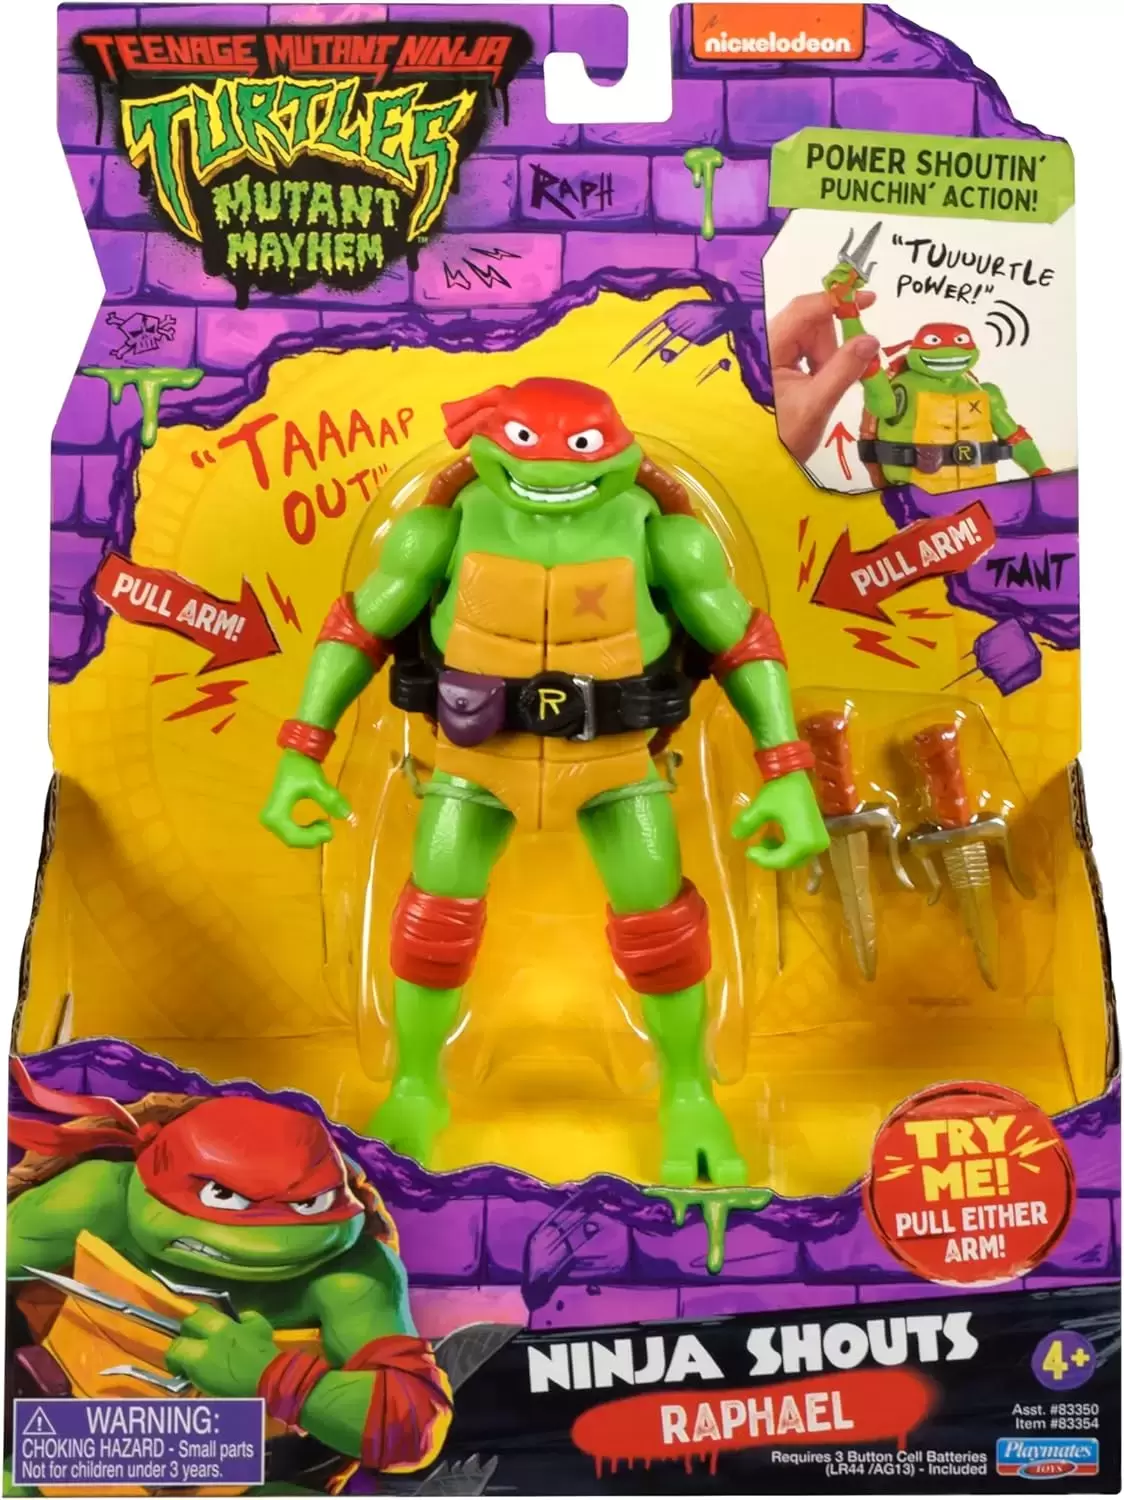 Teenage Mutant Ninja Turtles Mutant Mayhem - Raphael - Ninja Shouts